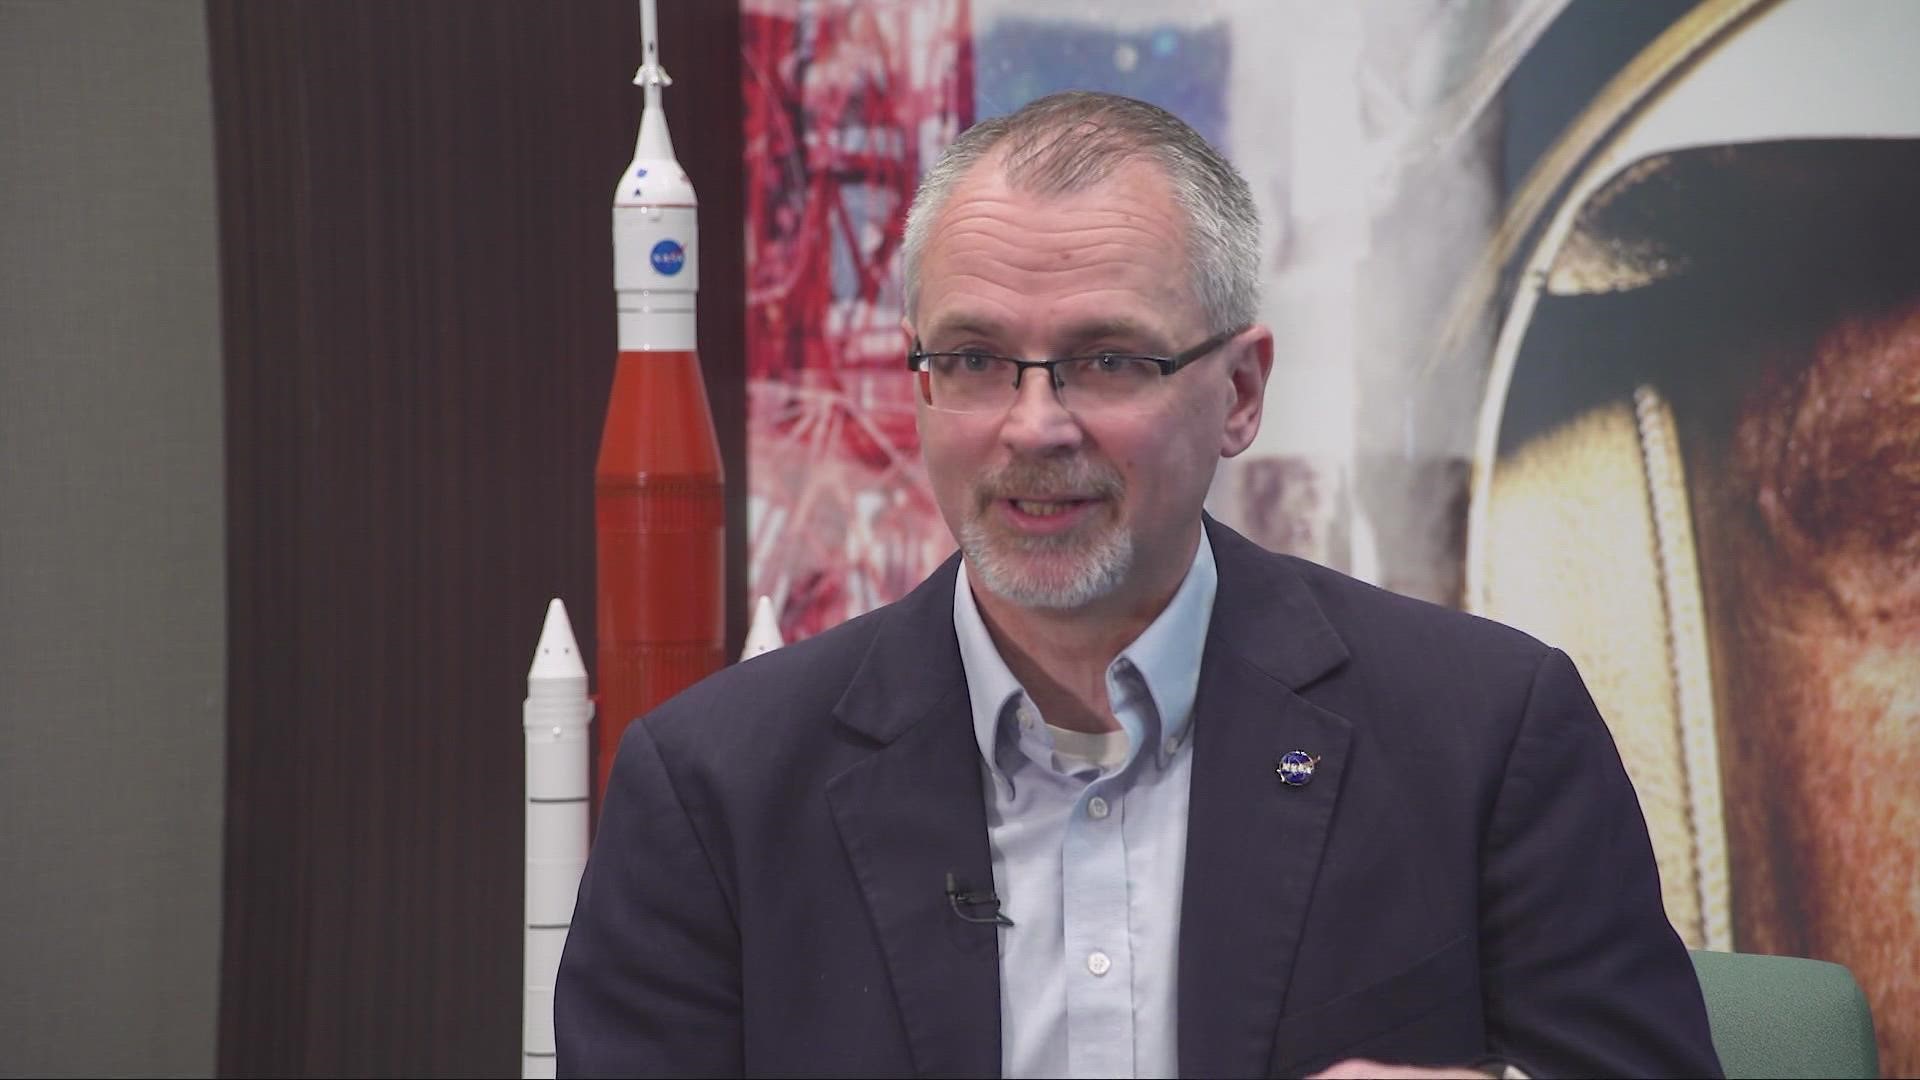 Coach Chuck Kyle's impact on top NASA executive 